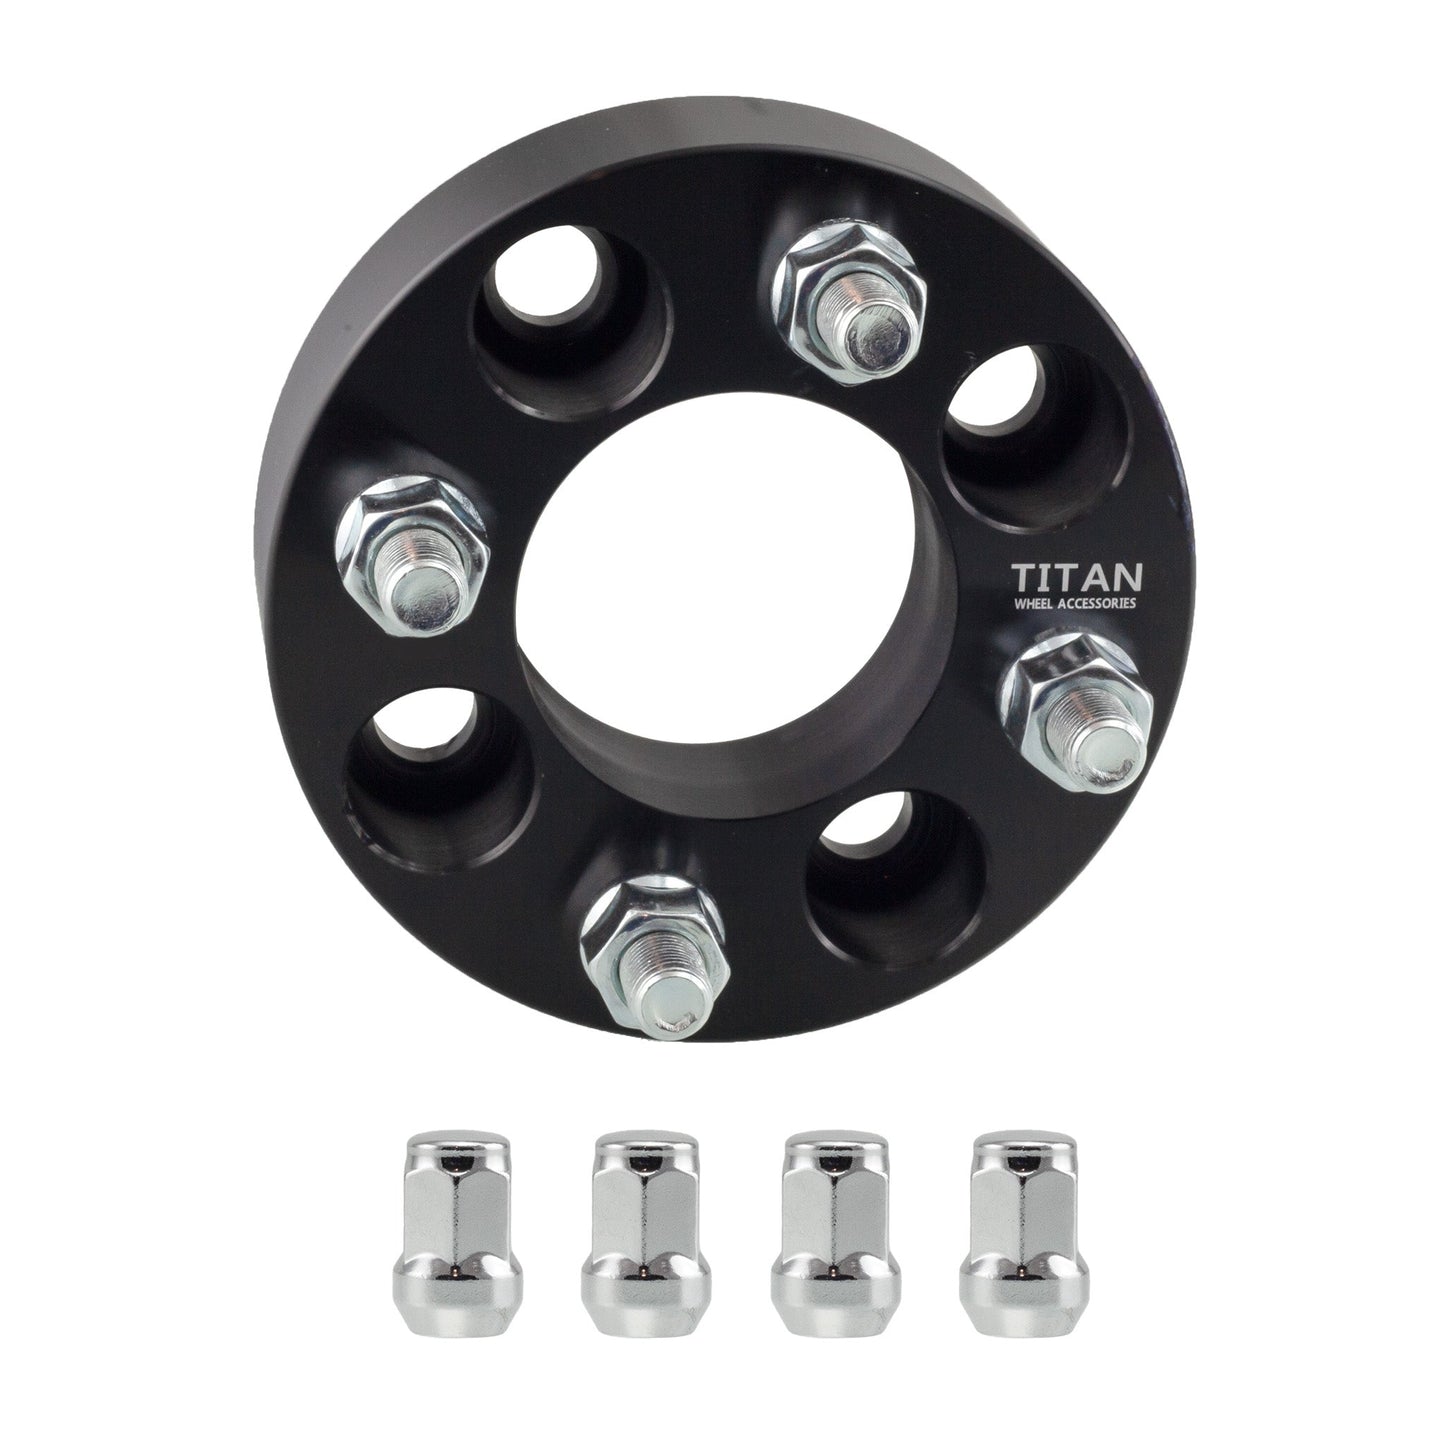 32mm (1.25") Titan Wheel Spacers for Mazda Miata Scion xB Toyota MR2 Celica | 4x100 | 54.1 Hubcentric |12x1.5 Studs | Titan Wheel Accessories